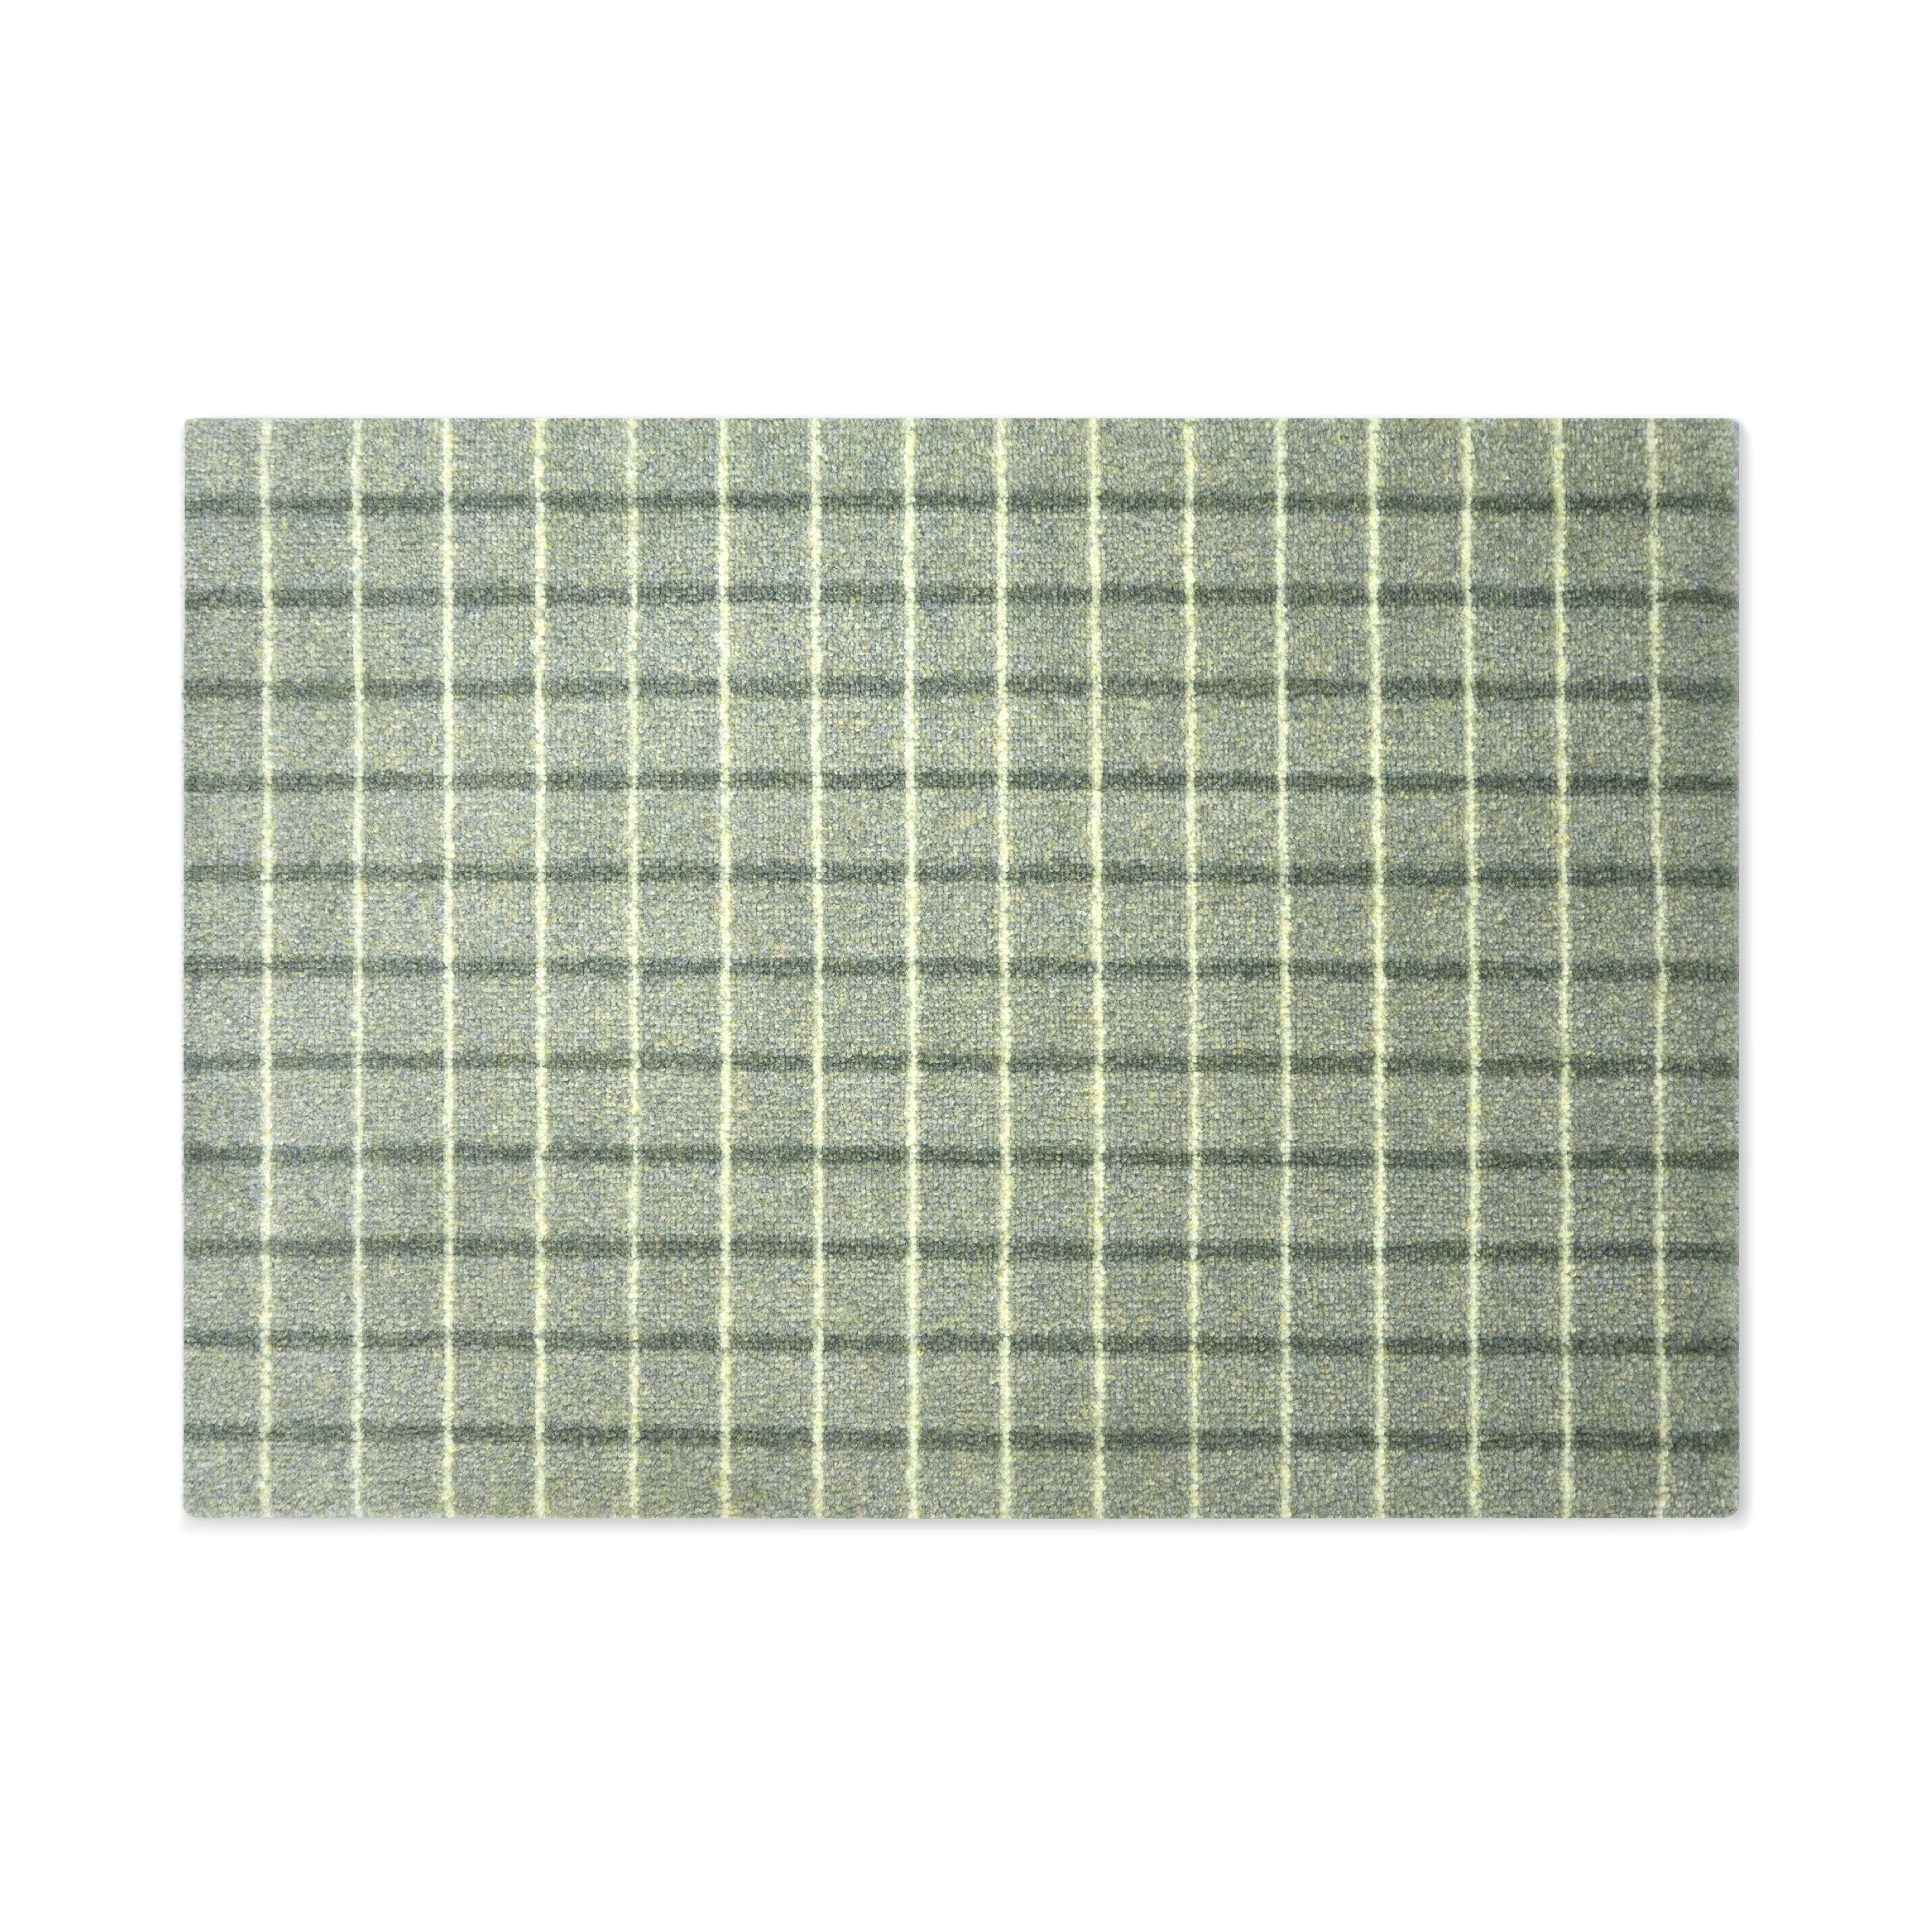 Heymat Grid Doormat Matcha Lemon, 85x115 Cm